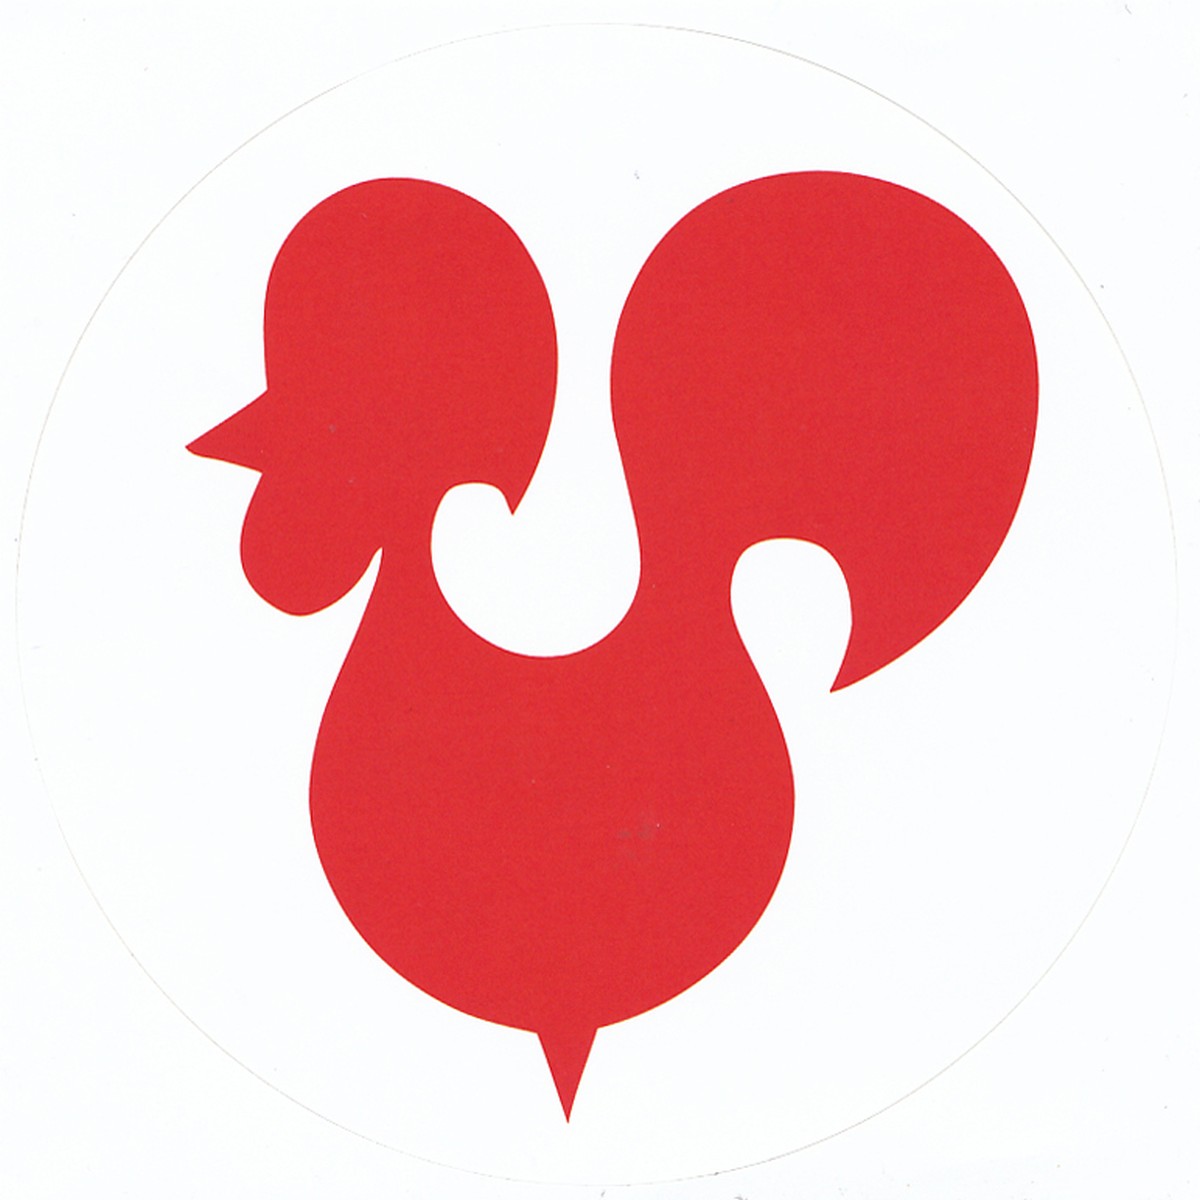 2020 Rode Haon sticker